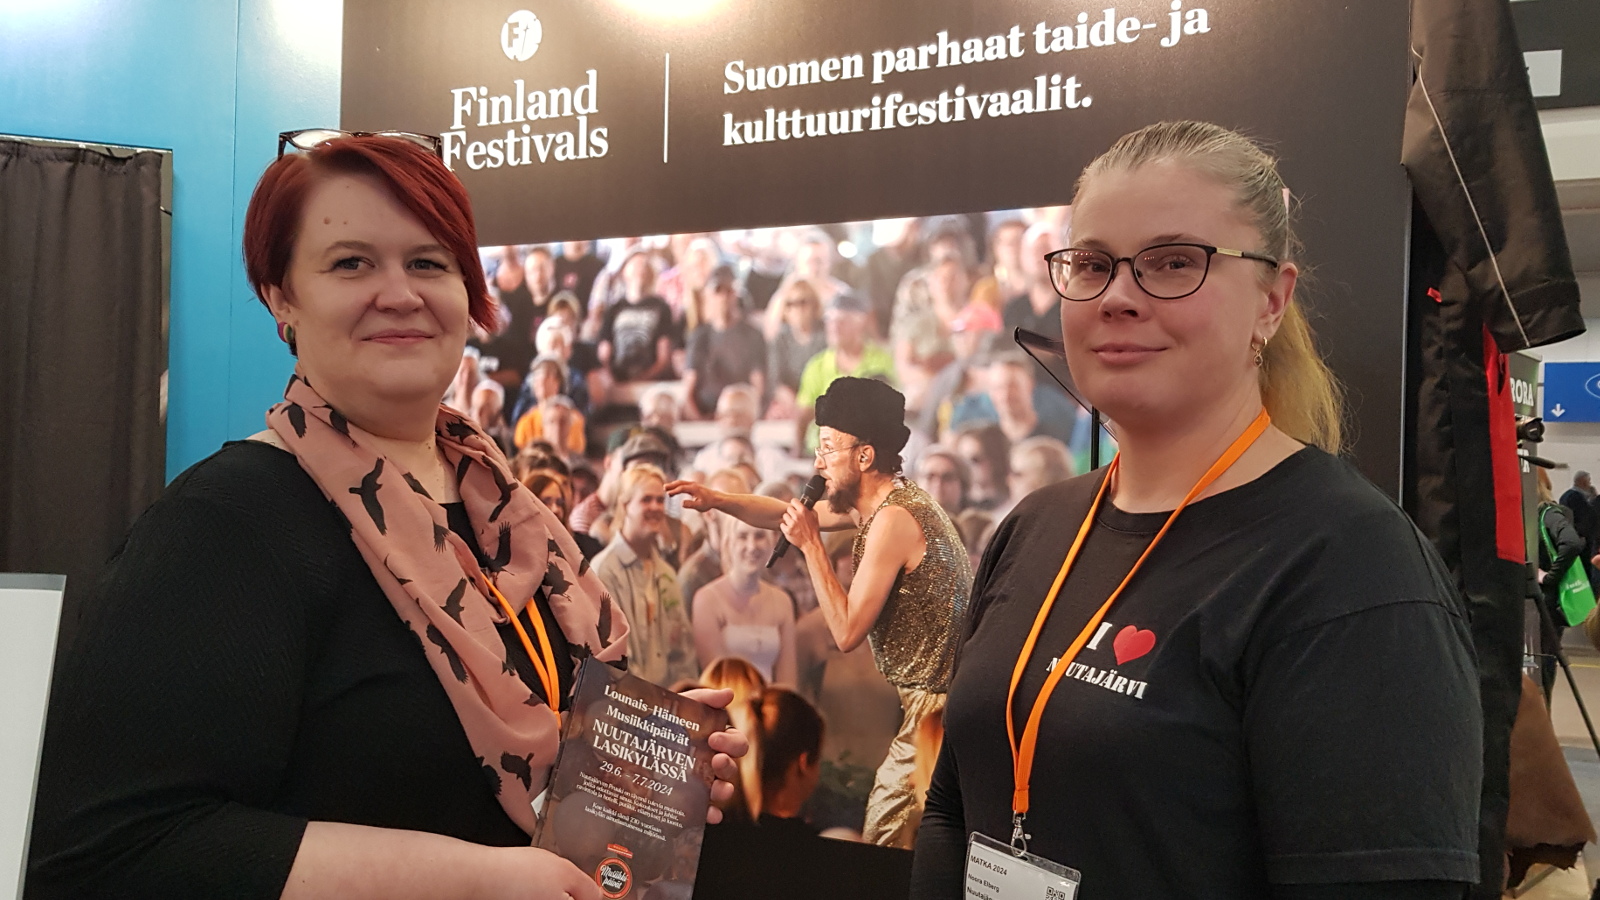 Kuvassa ovat Päivi Lehti ja Noora Elberg mustissa t-paidoissa. Taustalla näkyy Finland Festivals -teksti ja festarikuva, jossa on paljon ihmisiä.